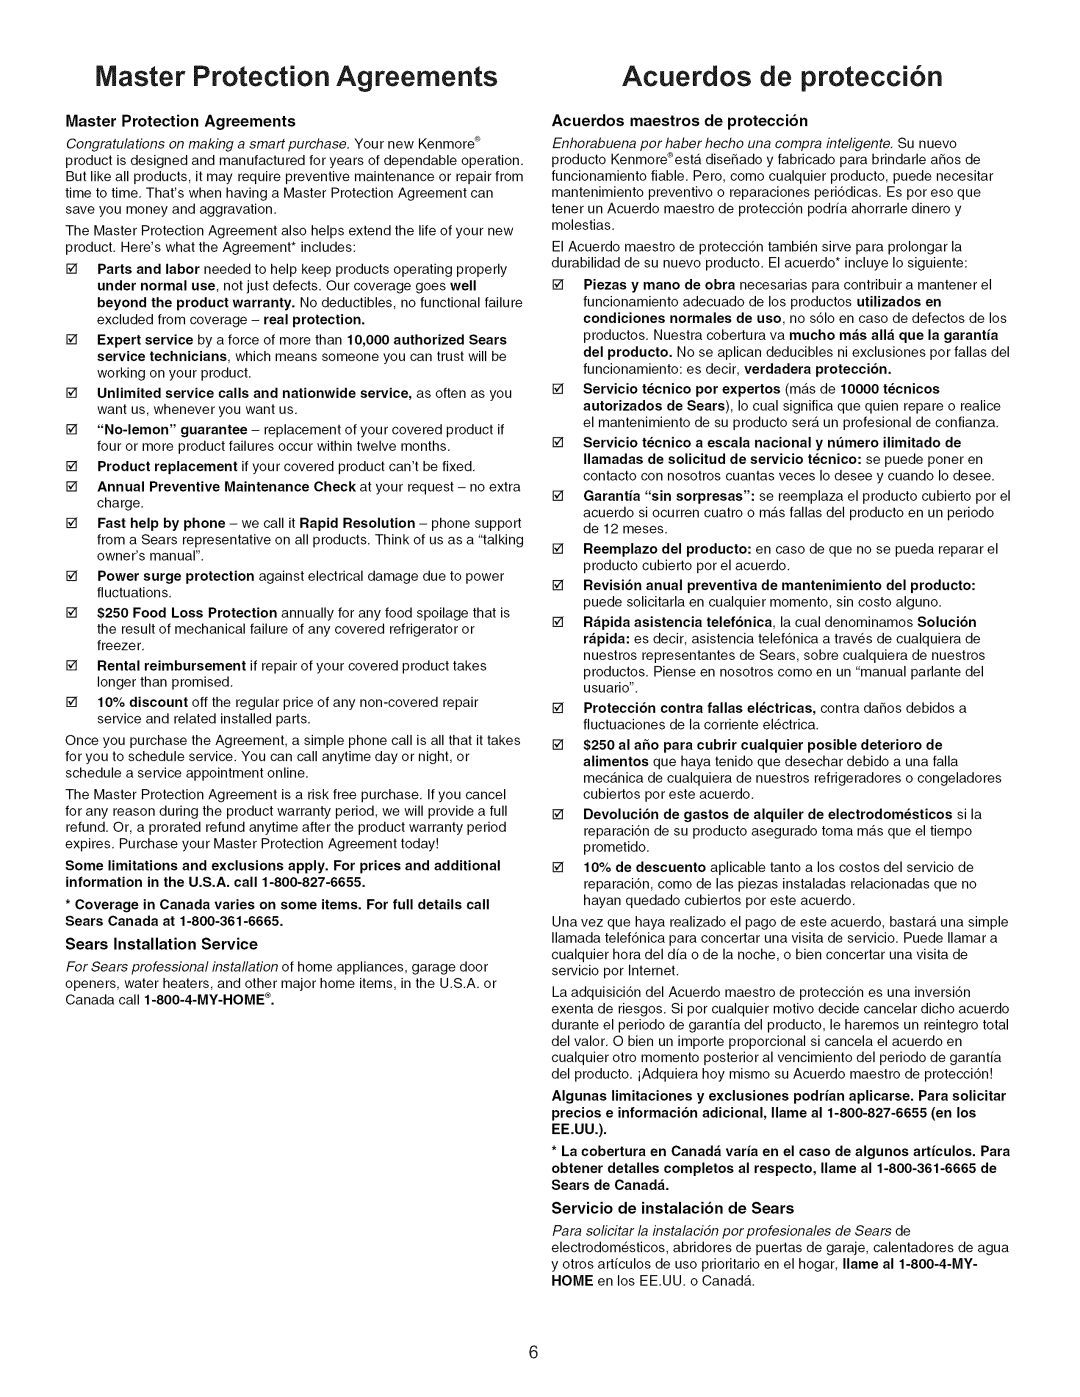 Kenmore 790.7747 manual Master Protection Agreements, Acuerdos de protecci6n, Maintenance, Acuerdos maestros de proteccion 